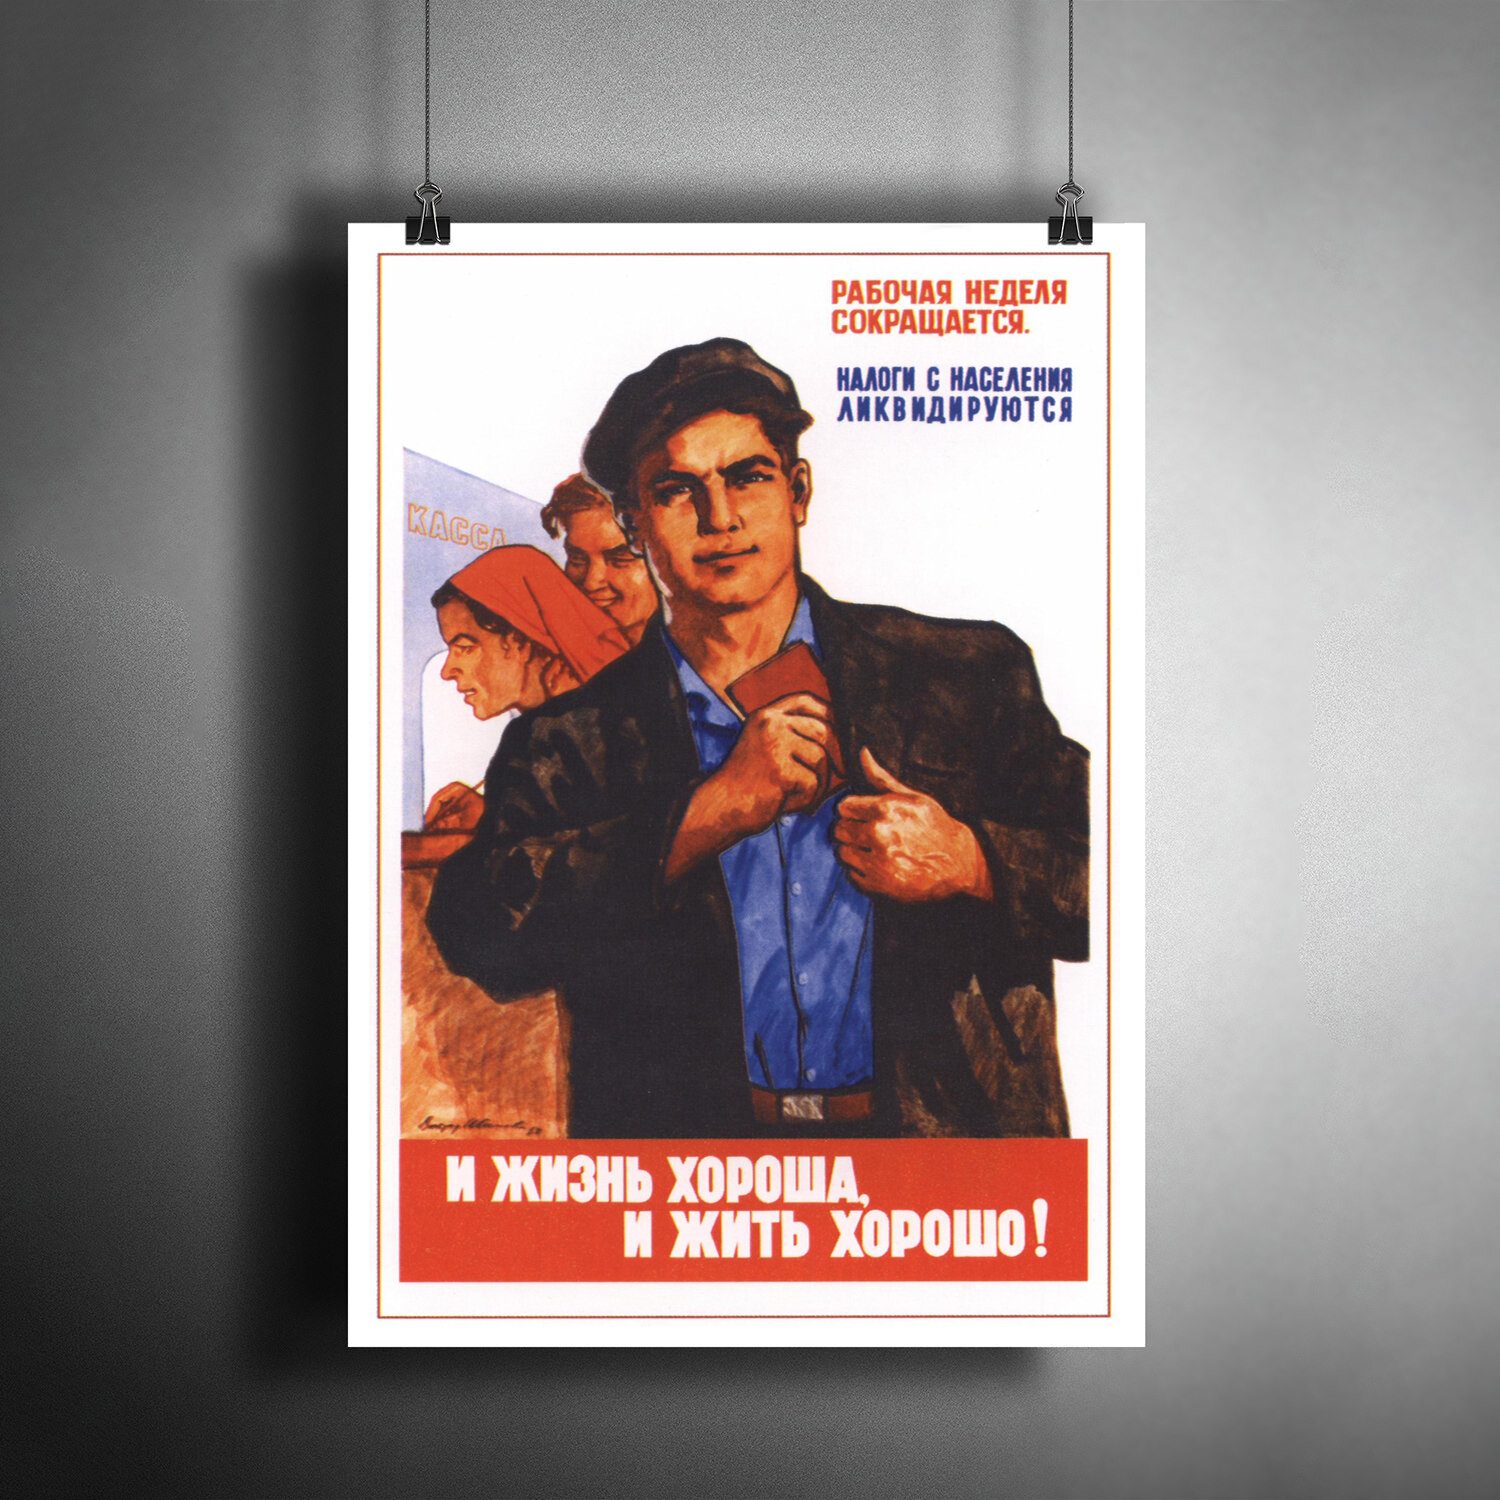 Постер плакат для интерьера "Советский плакат "И жизнь хороша, и жить хорошо!", 1961 г."/ A3 (297 x 420 мм)